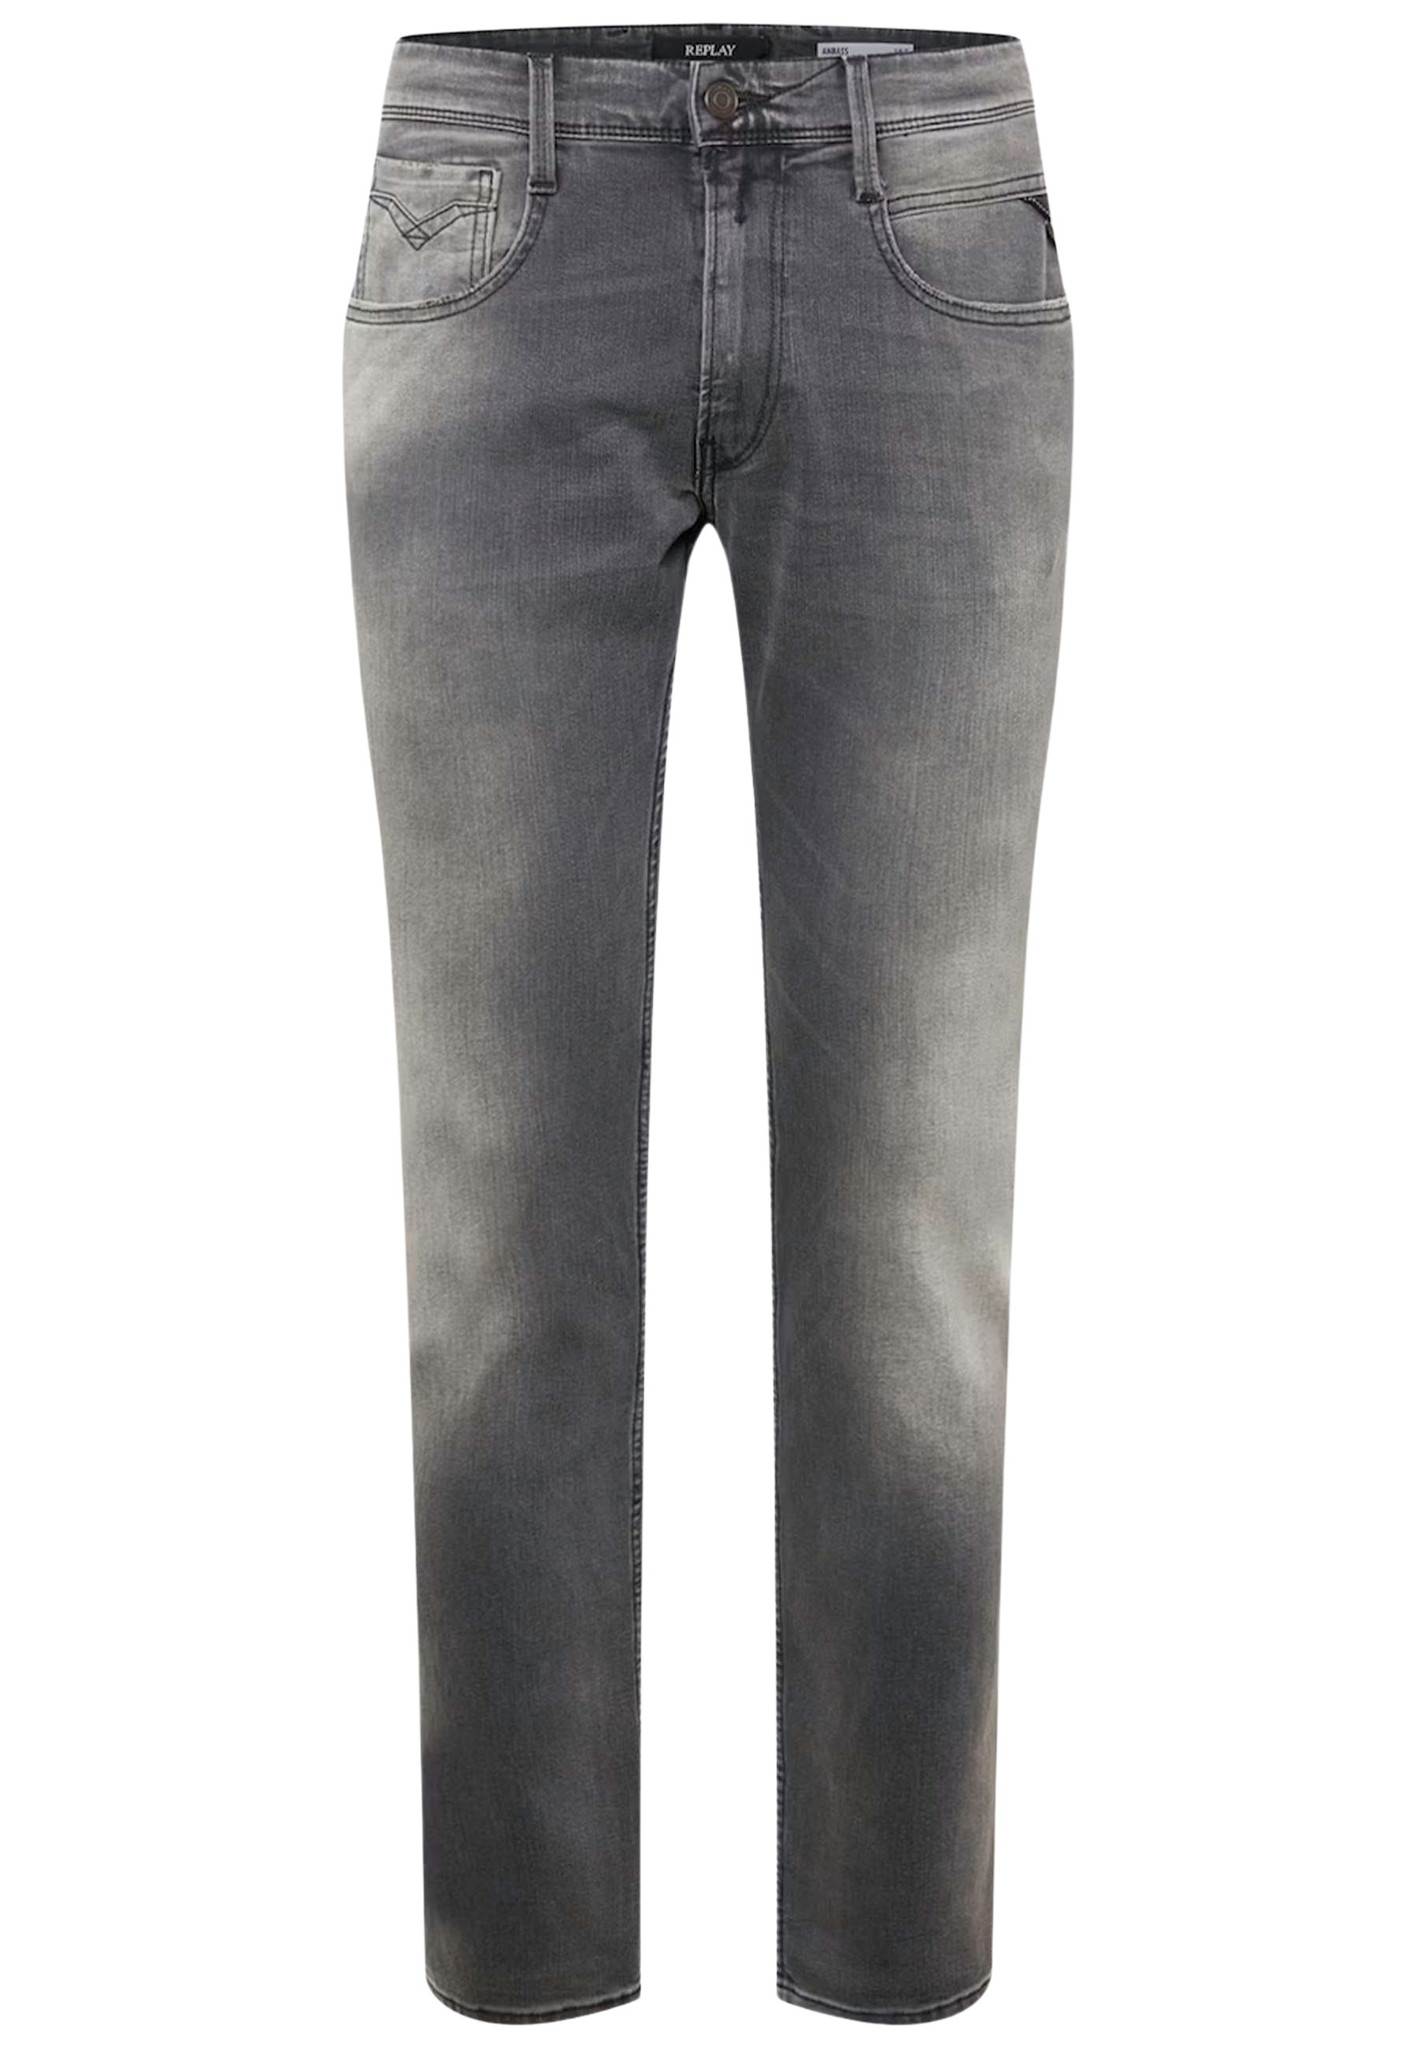 Replay jeans grijs Heren maat 32/36